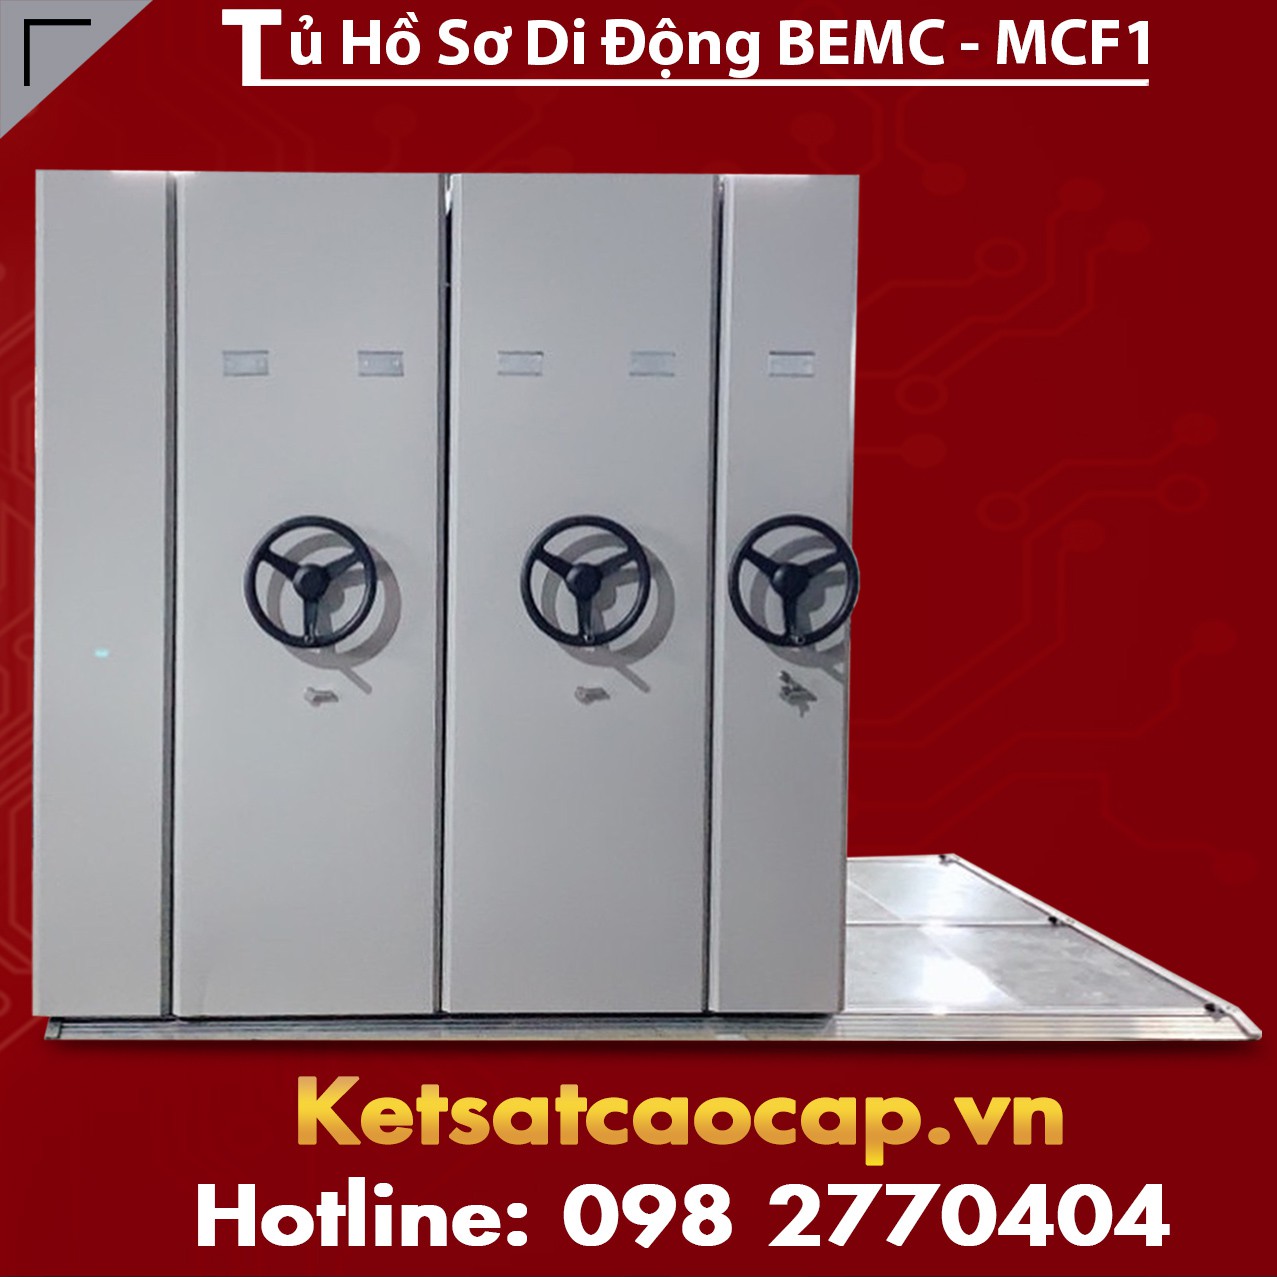 tủ hồ sơ di động bemc - mcf1 10